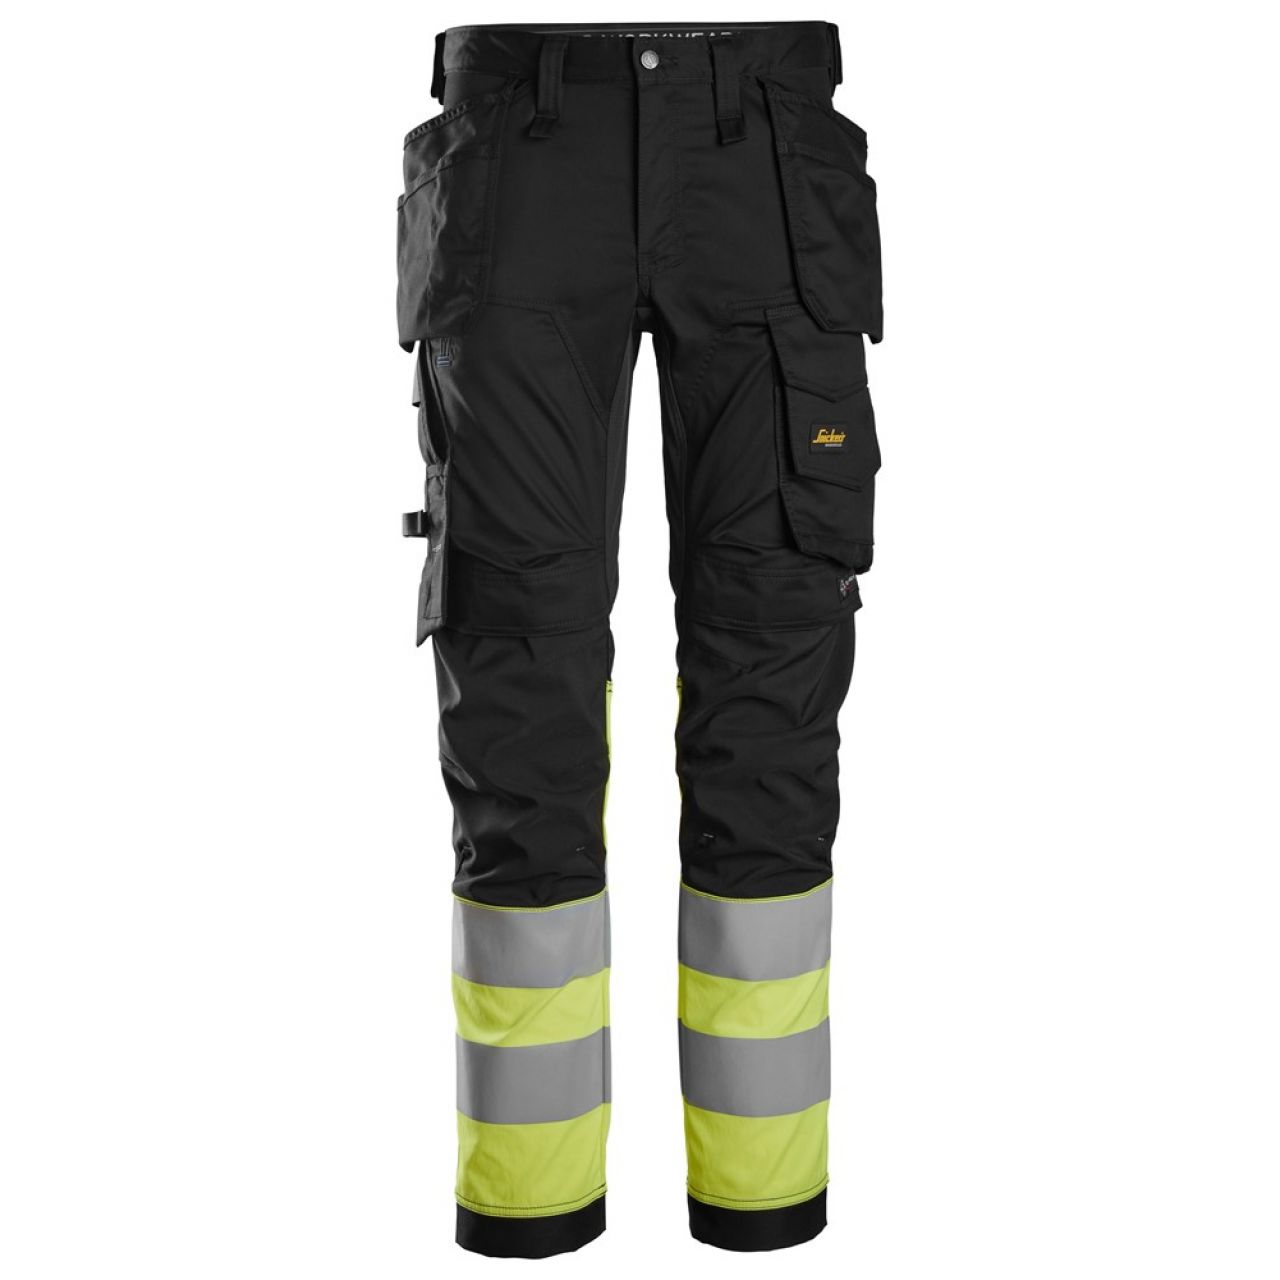 6234 Pantalones largos de trabajo elásticos de alta visibilidad clase 1 con bolsillos flotantes negro-amarillo talla 156